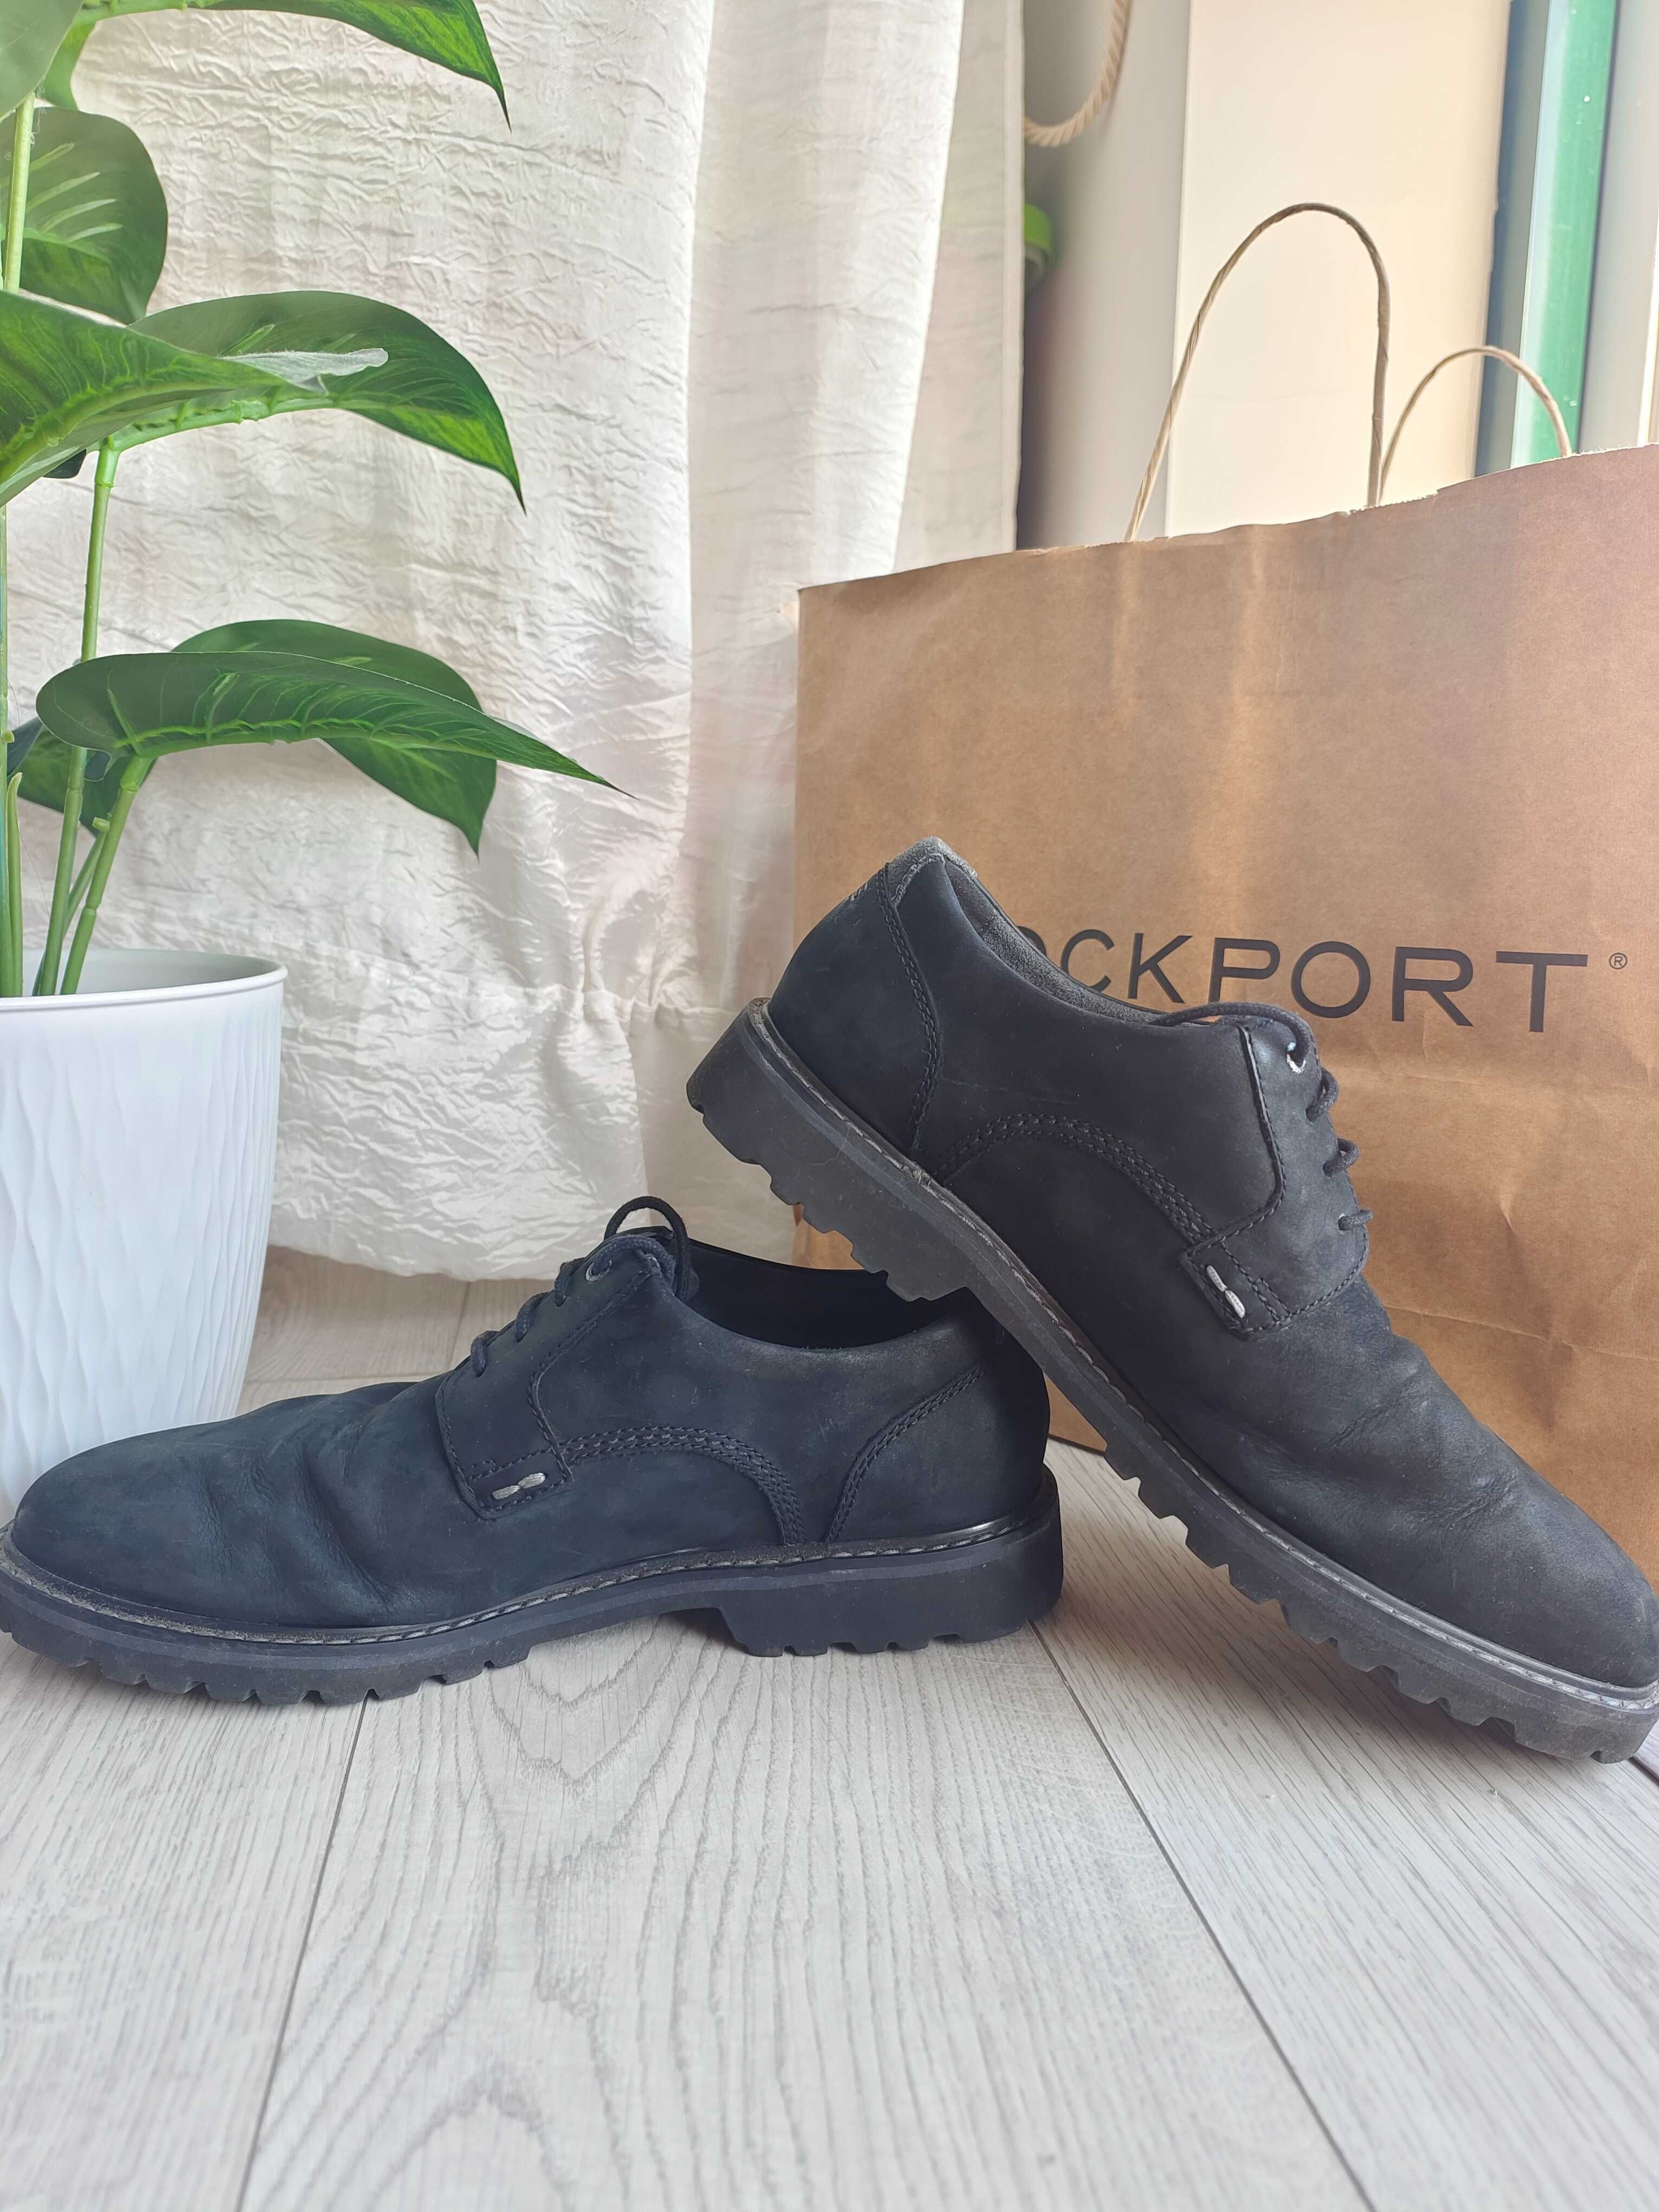 Sapatos clássicos da Rockport